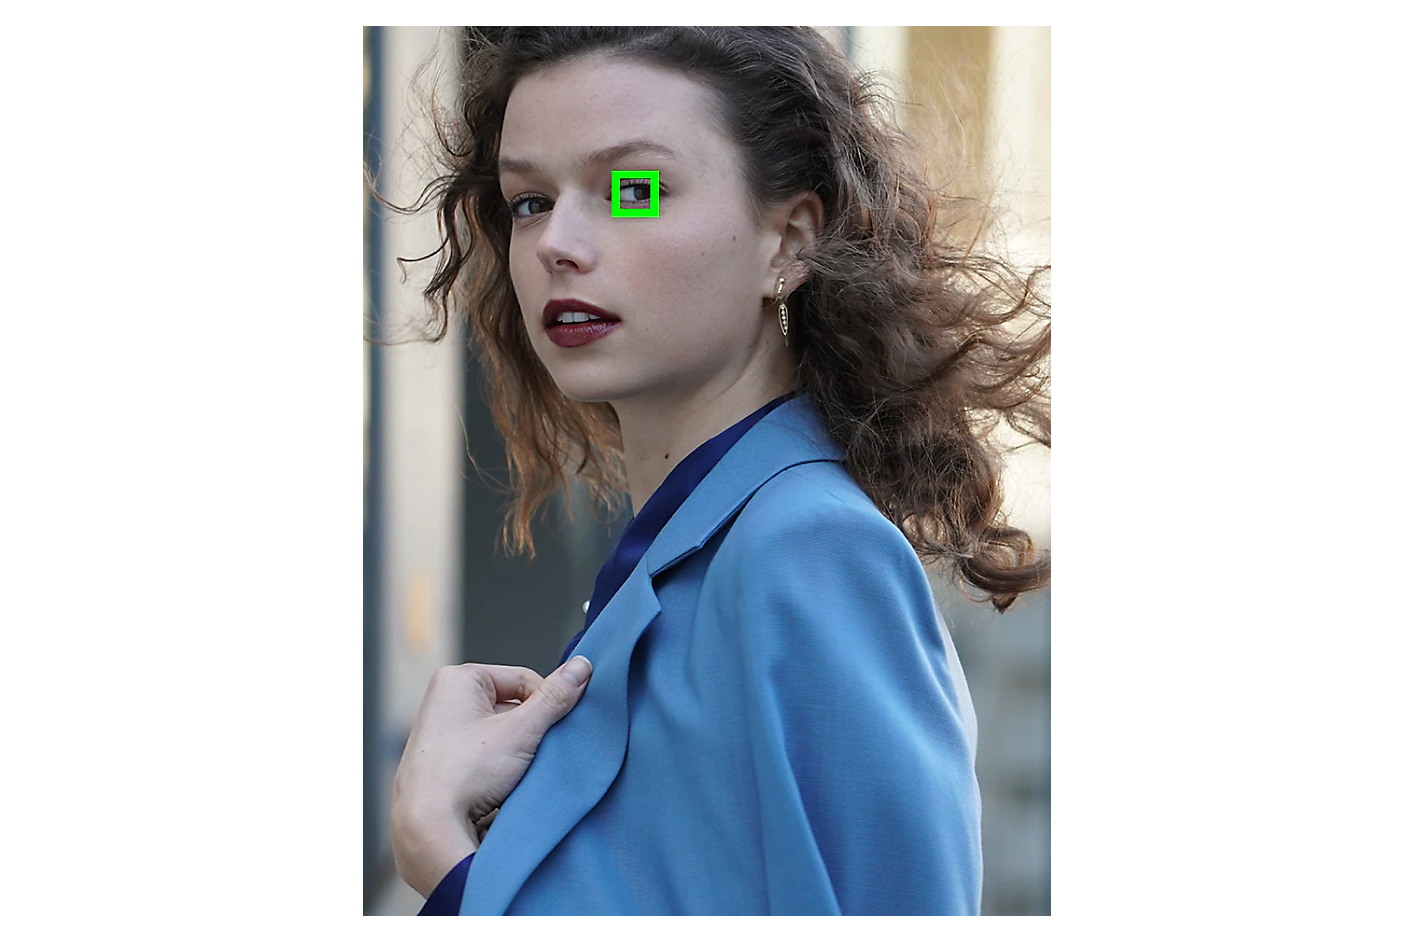 Een vrouw in een blauwe jas kijkt opzij met een groen vierkant dat één oog omkadert.